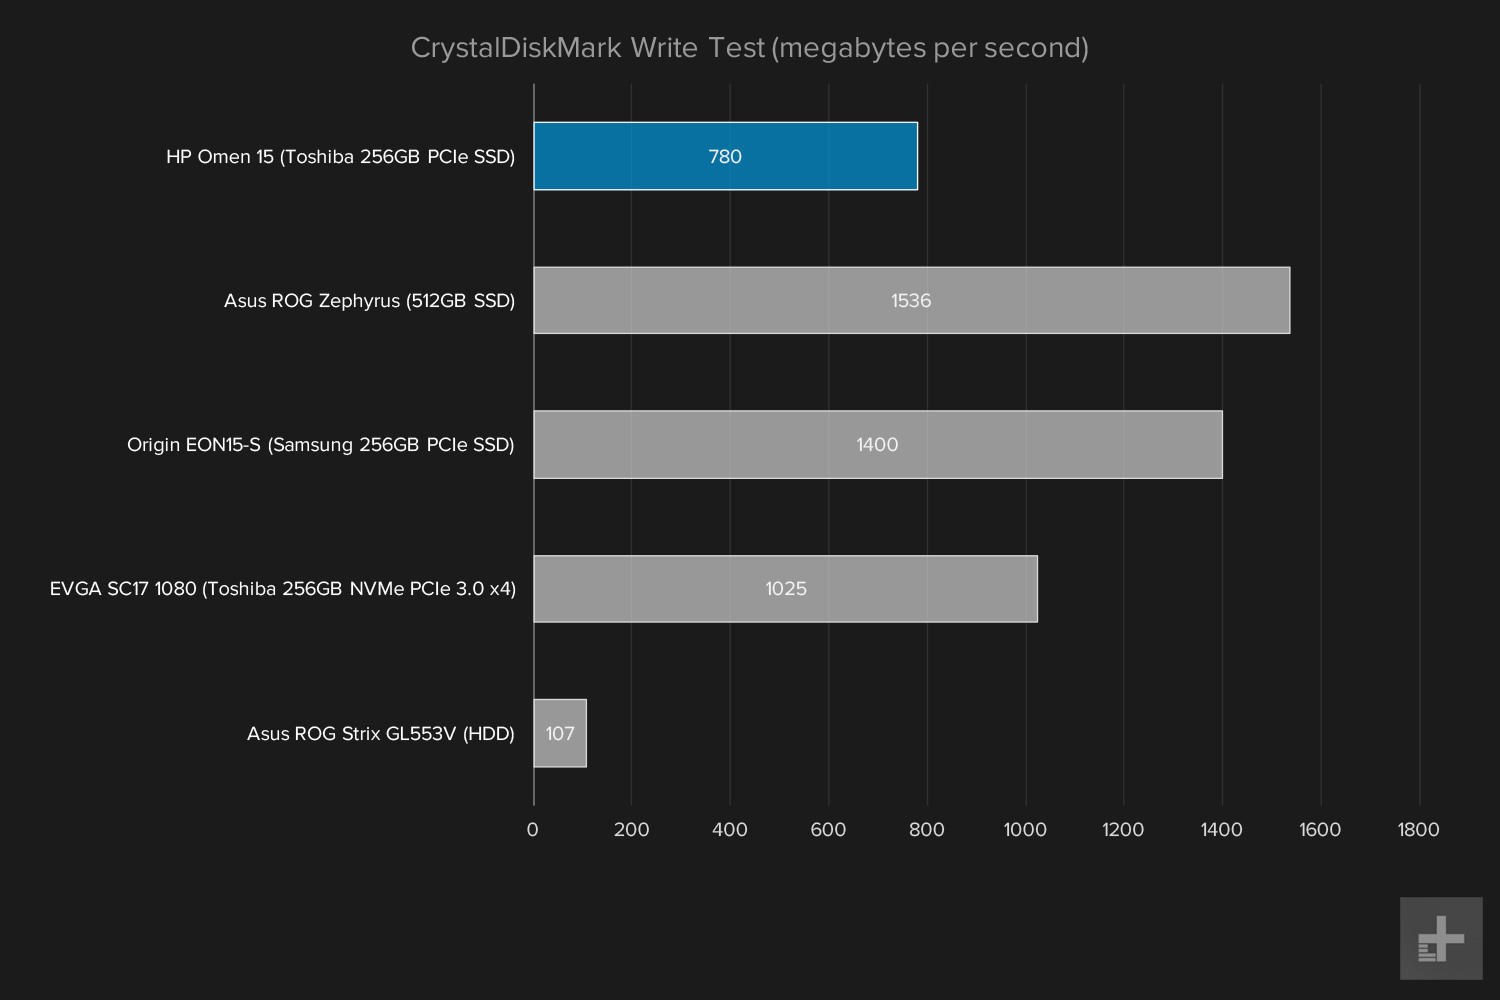 HP Omen benchmark graphs CrystalDiskMark write